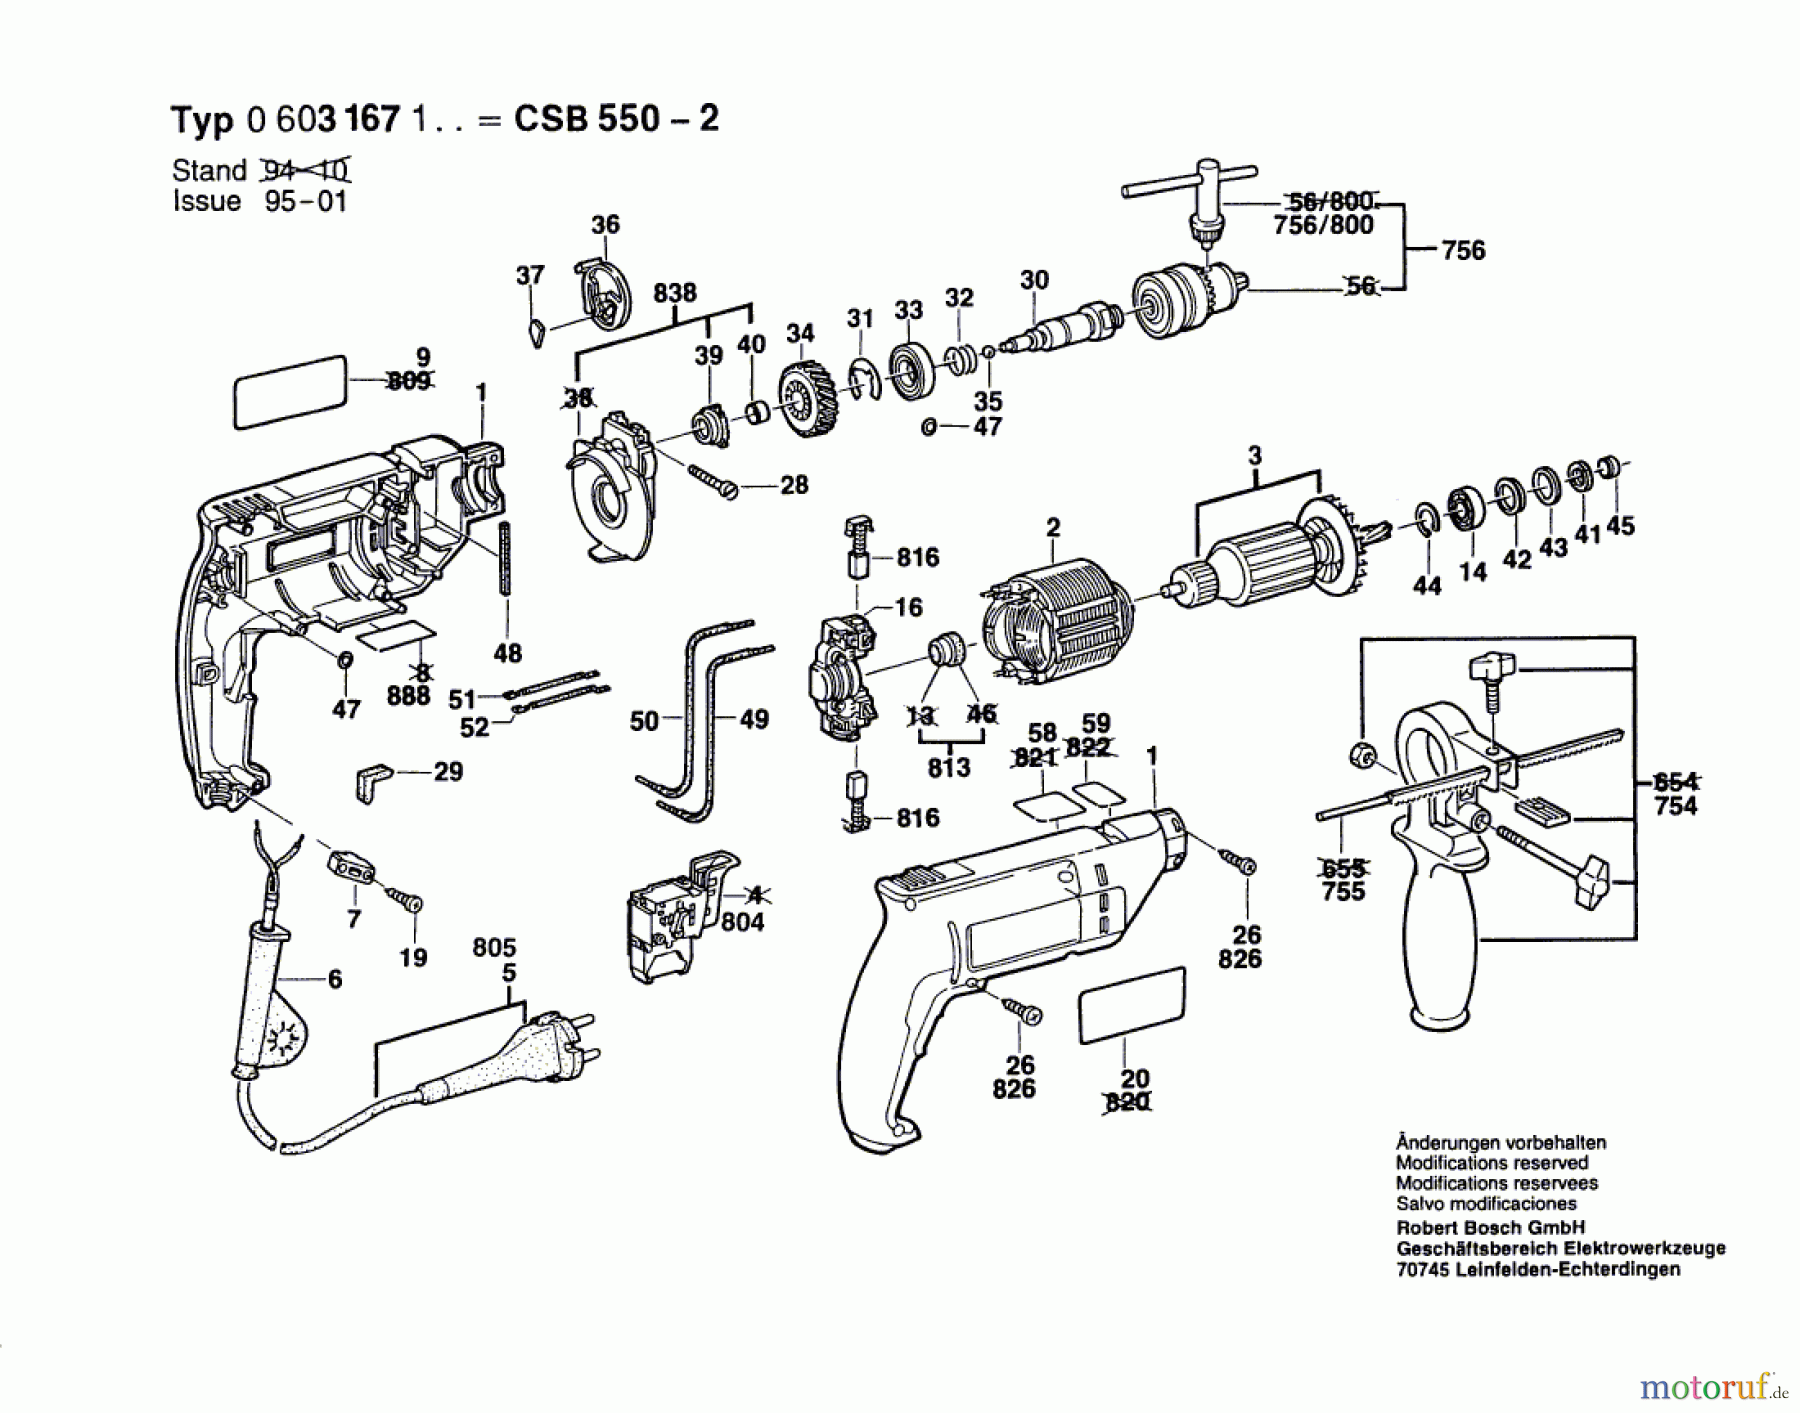  Bosch Werkzeug Schlagbohrmaschine CSB 550-2 Seite 1